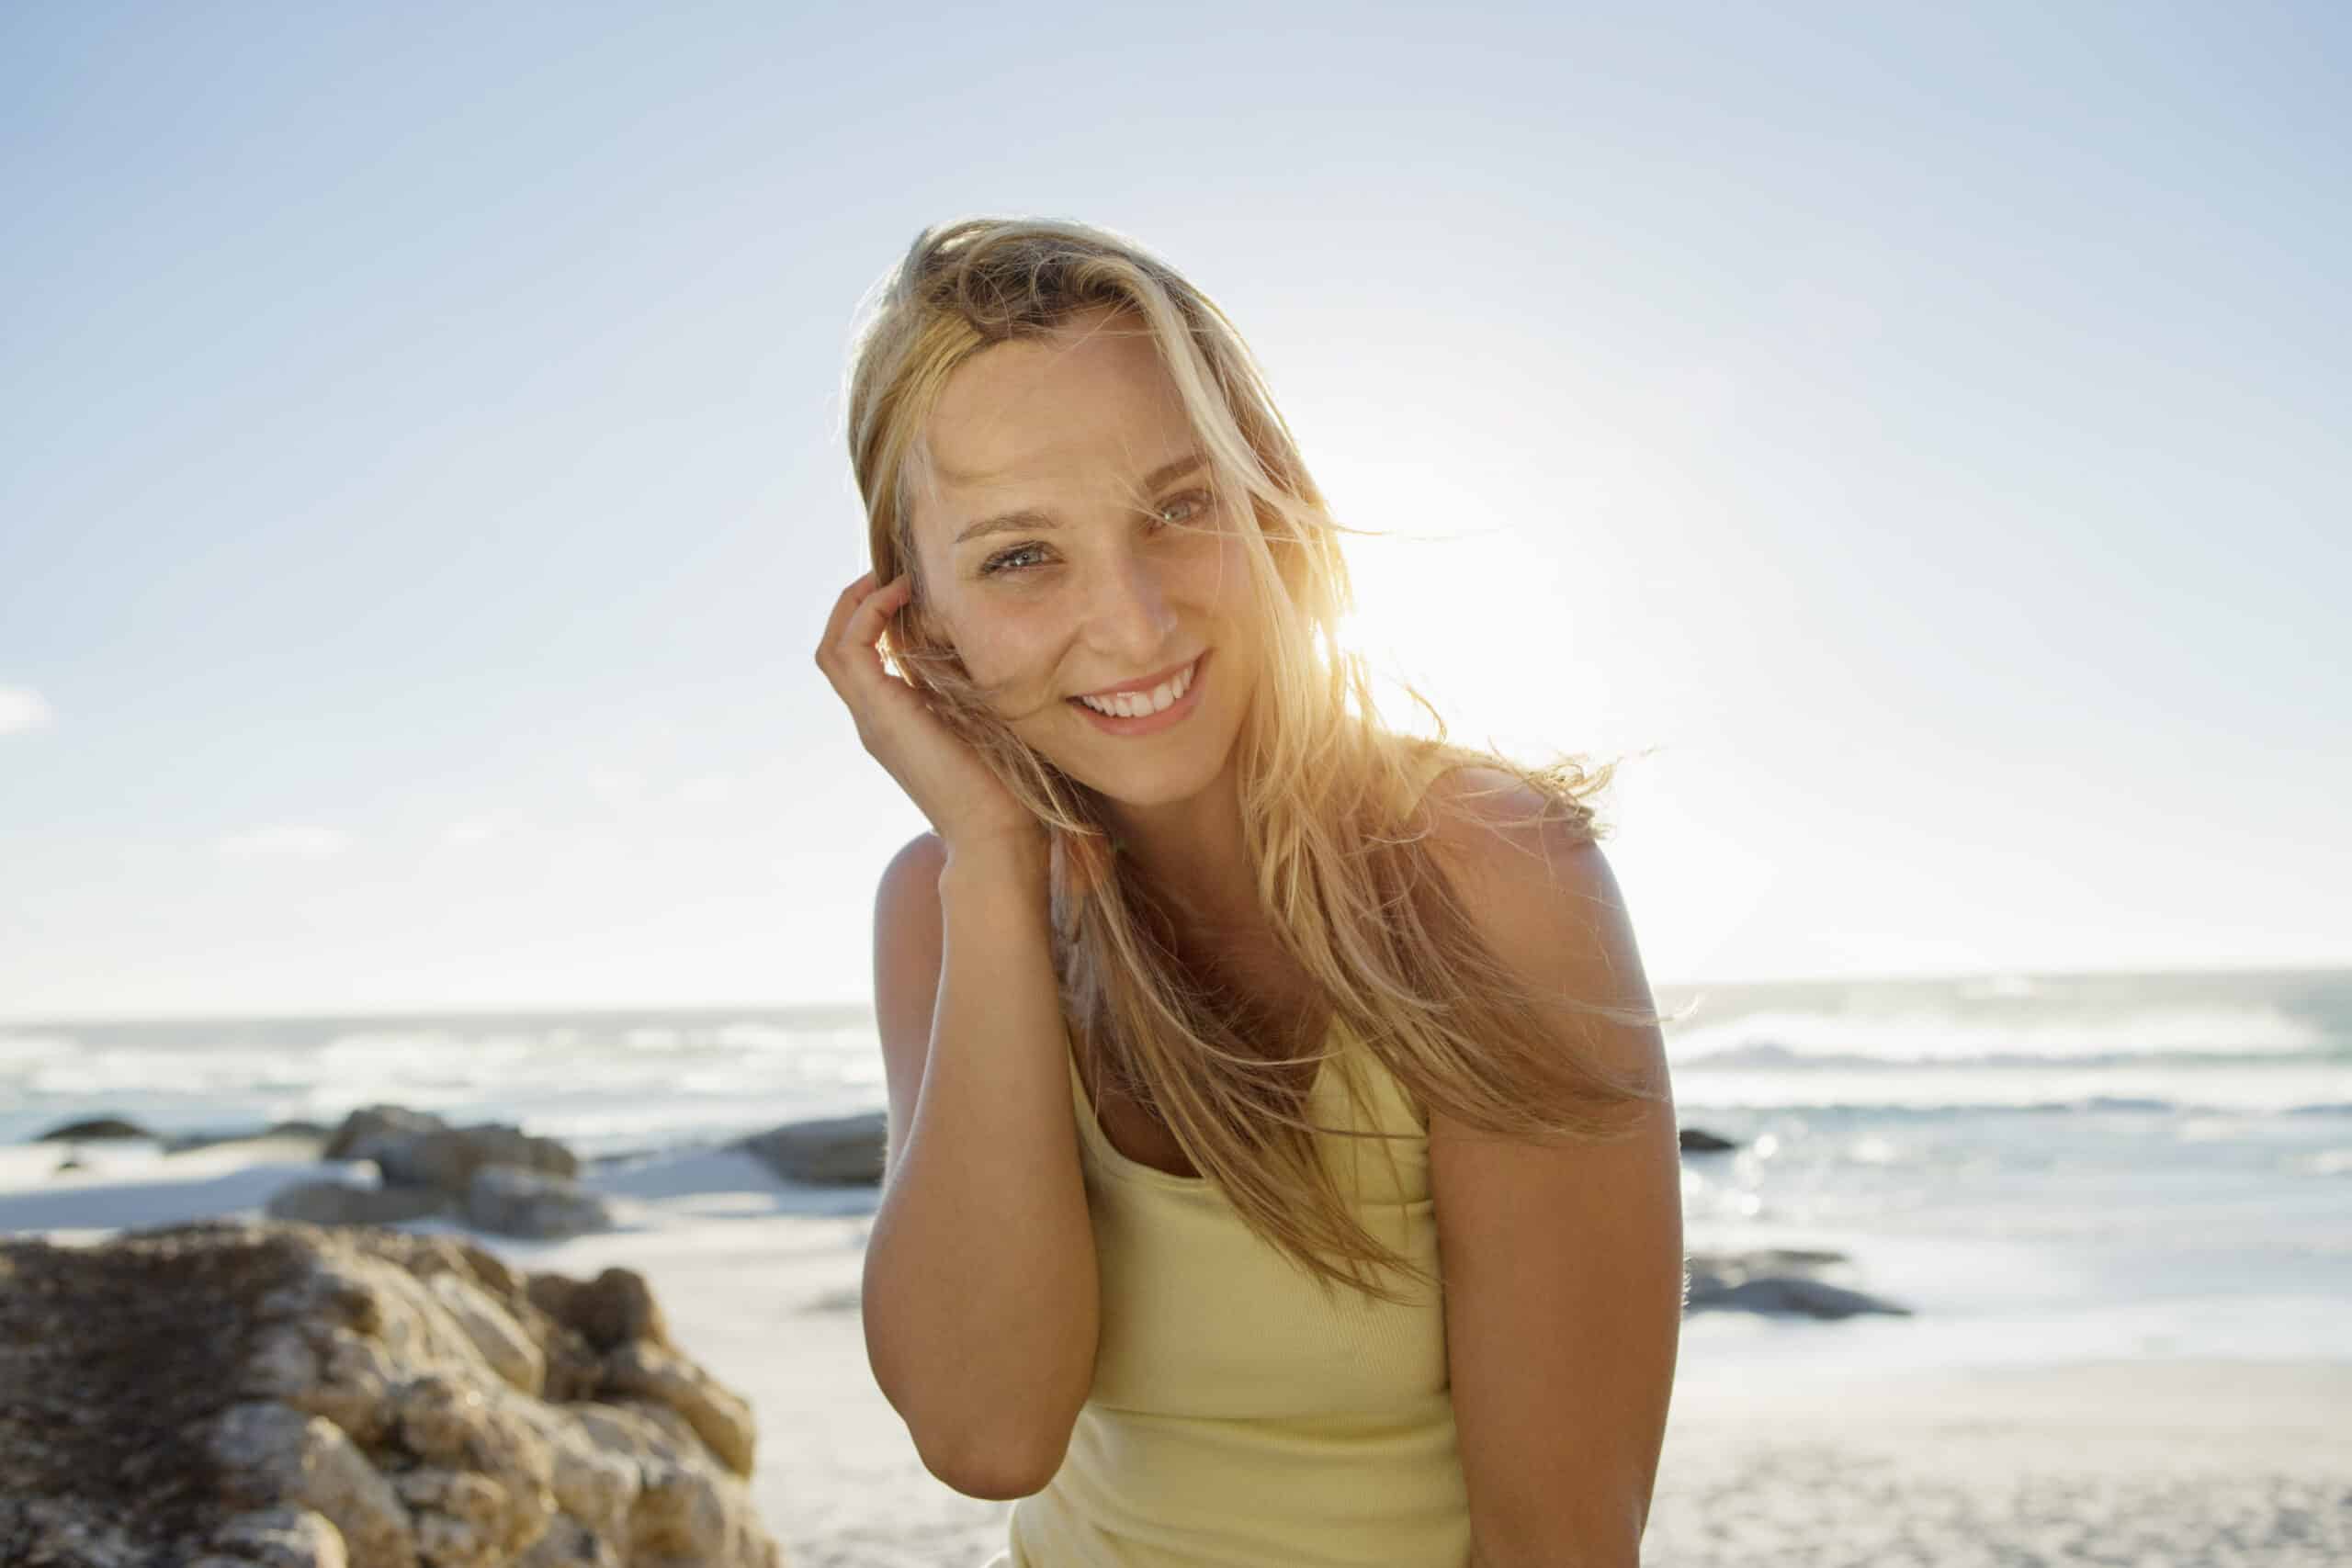 Eine fröhliche Frau lächelt an einem sonnigen Strand in die Kamera, während ihr Haar im Wind weht. Im Hintergrund sind das Meer und die Felsen zu sehen. Sie trägt ein gelbes Oberteil. © Fotografie Tomas Rodriguez